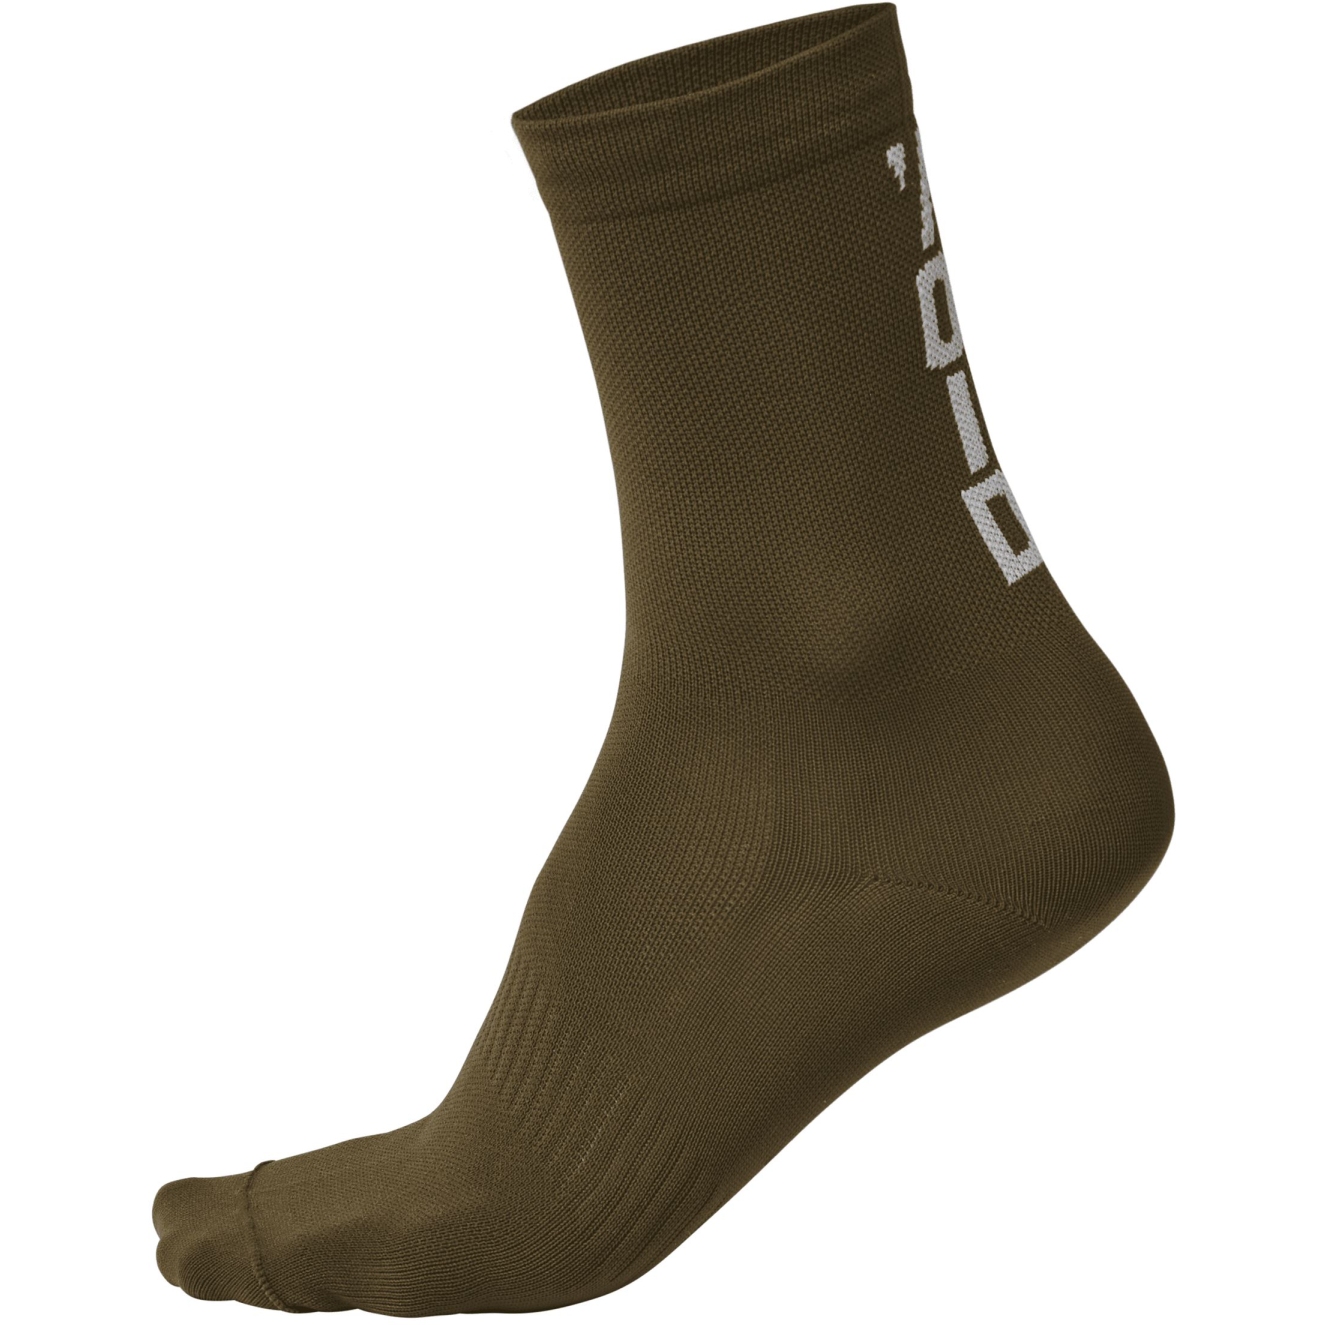 Produktbild von VOID Cycling Performance Socken 14 - Khaki